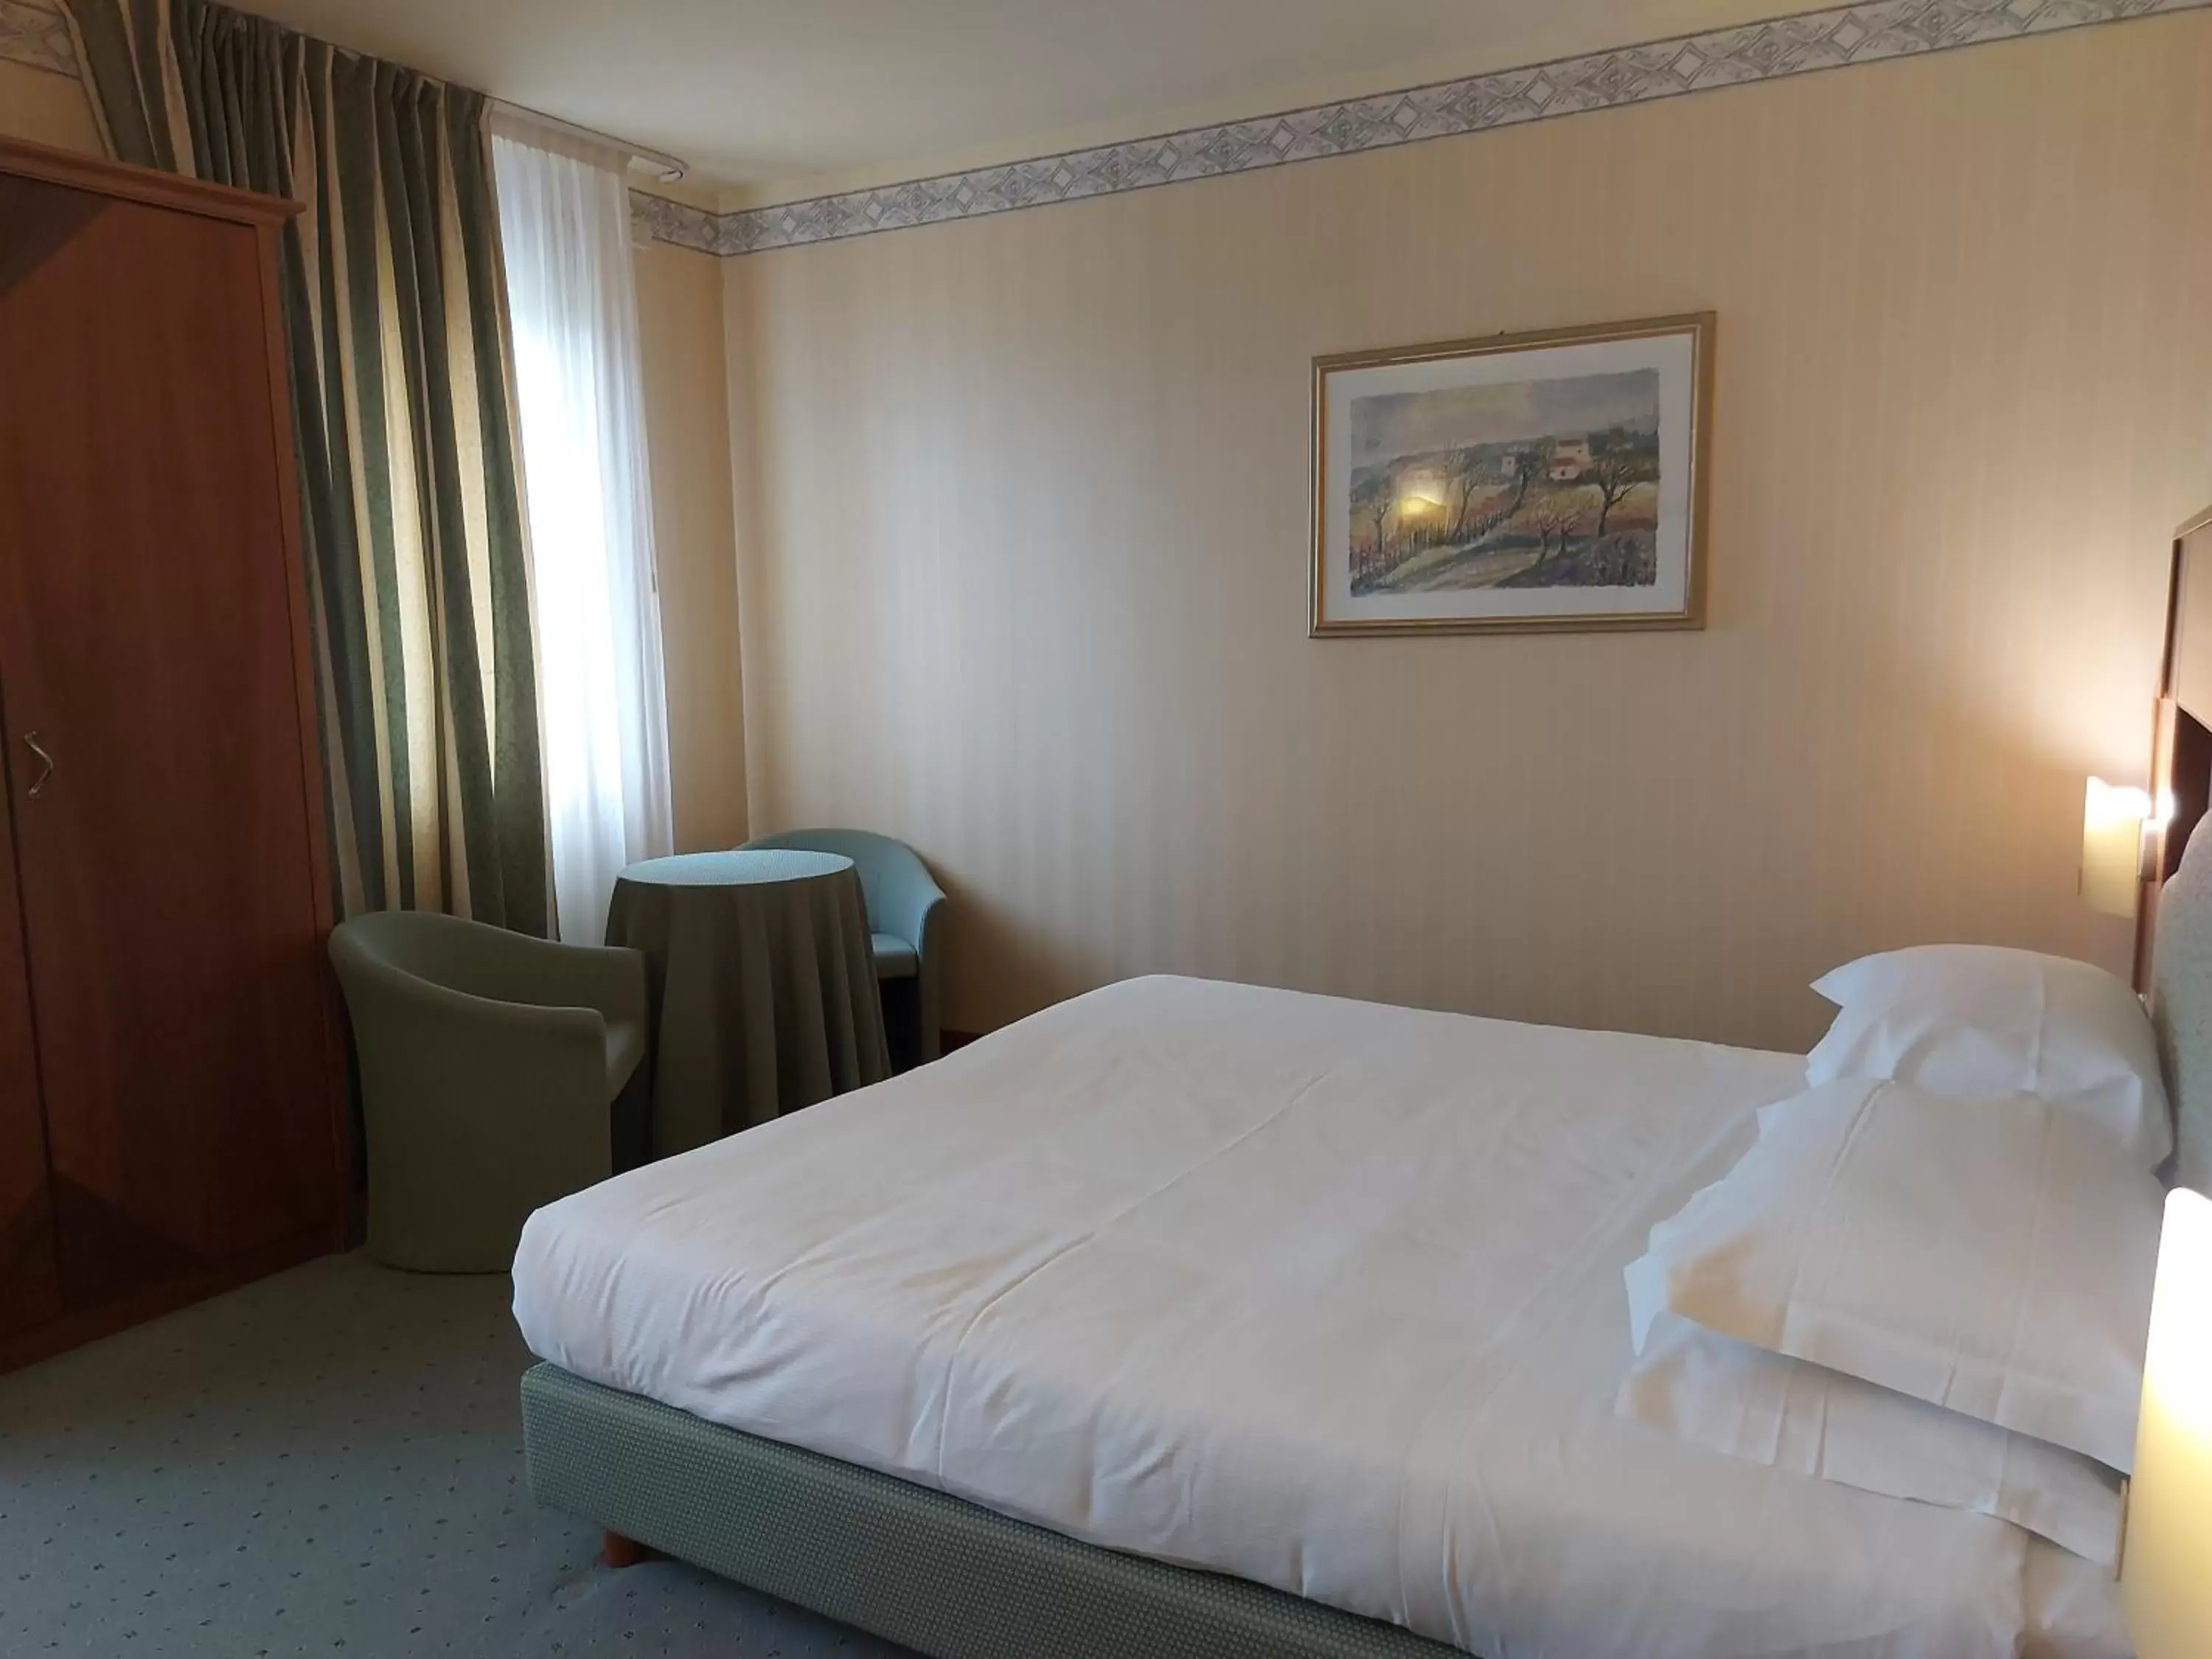 Bedroom, Bed in Phi Hotel Astoria